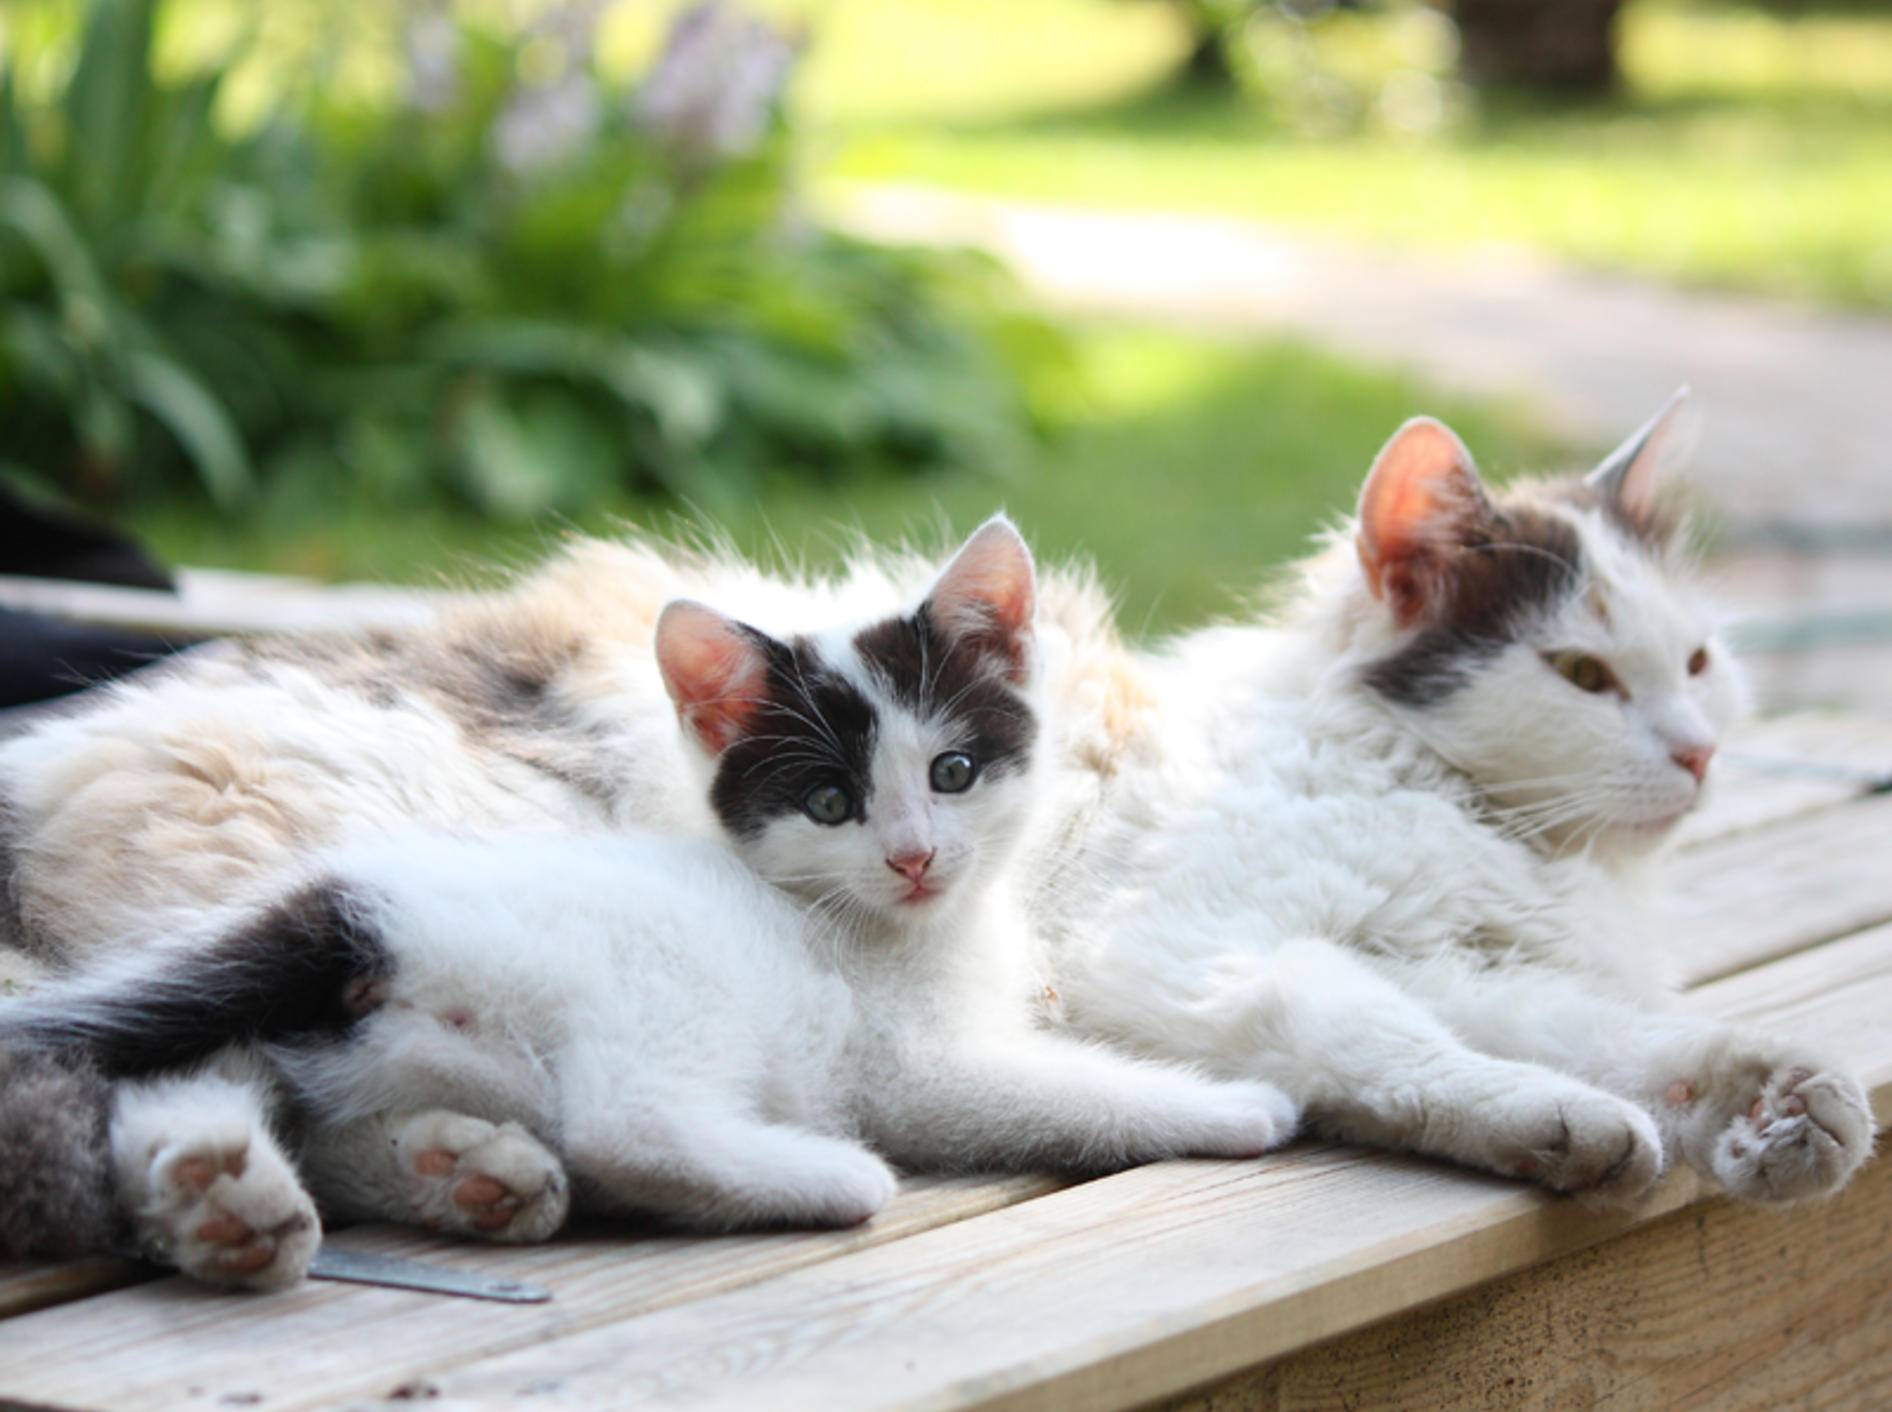 Die Zeit in der Katzenpension kann der Samtpfote viel Spaß machen – Bild: Shutterstock: Anastasija Popova